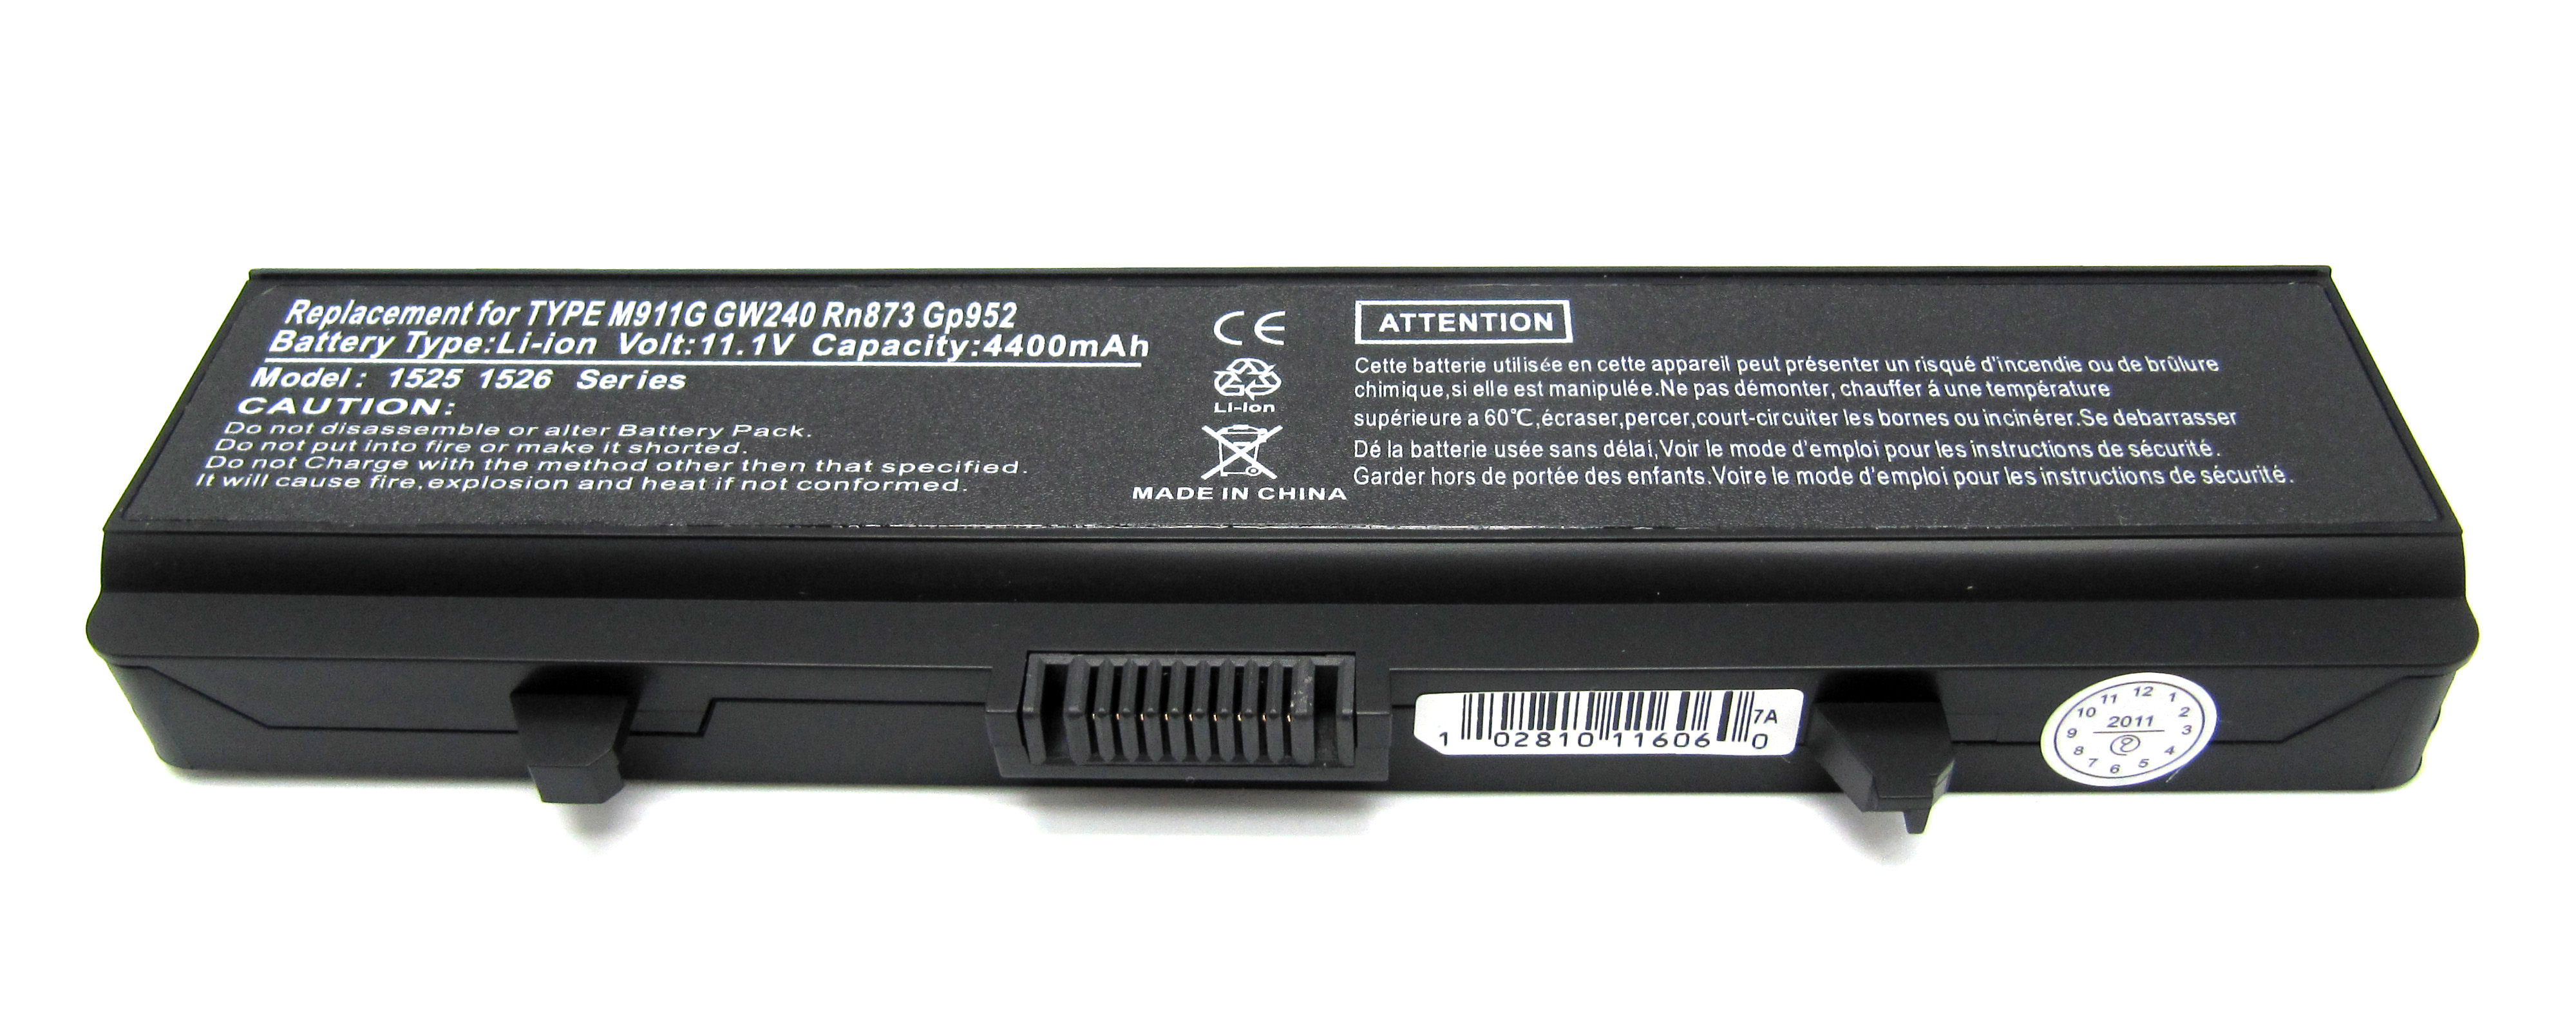 Batería para ordenador portátil Dell Inspiron 1525. - EBLP136 - FERSAY